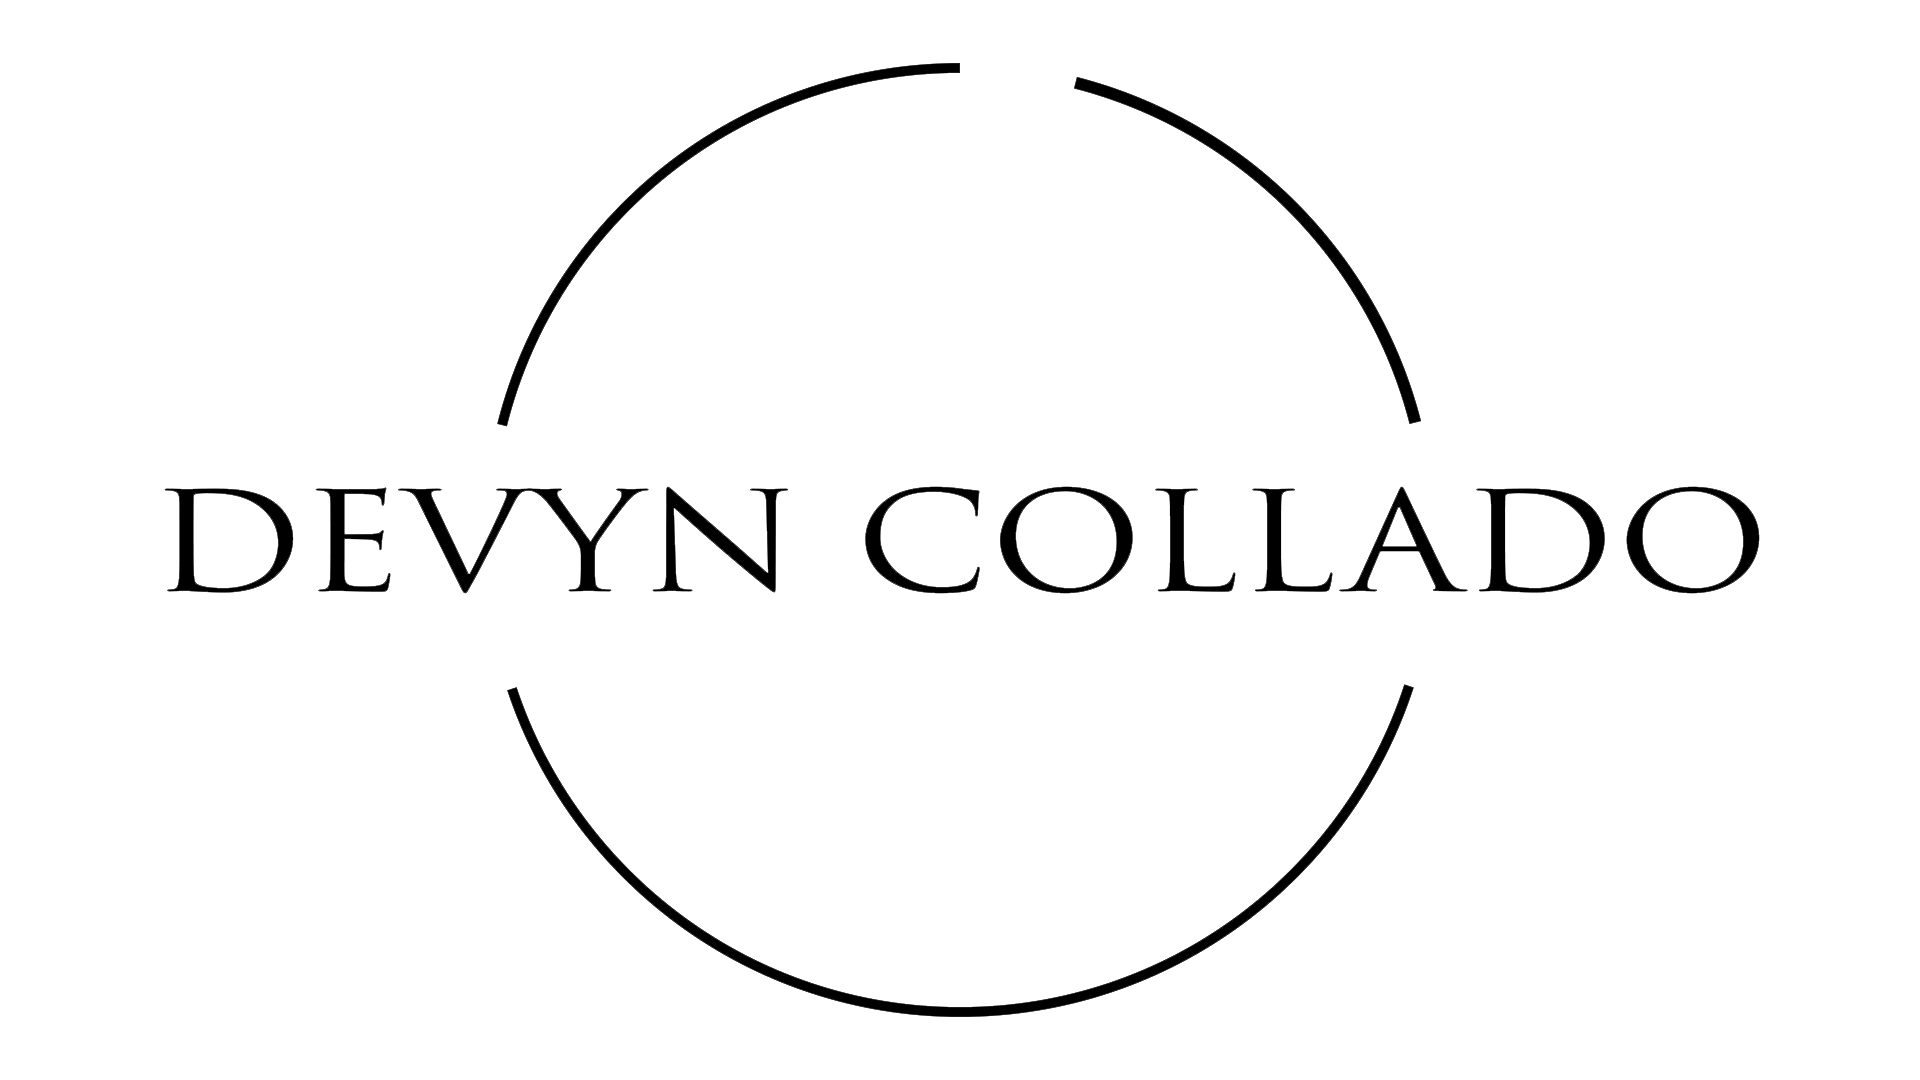 Devyn Collado Logo.png